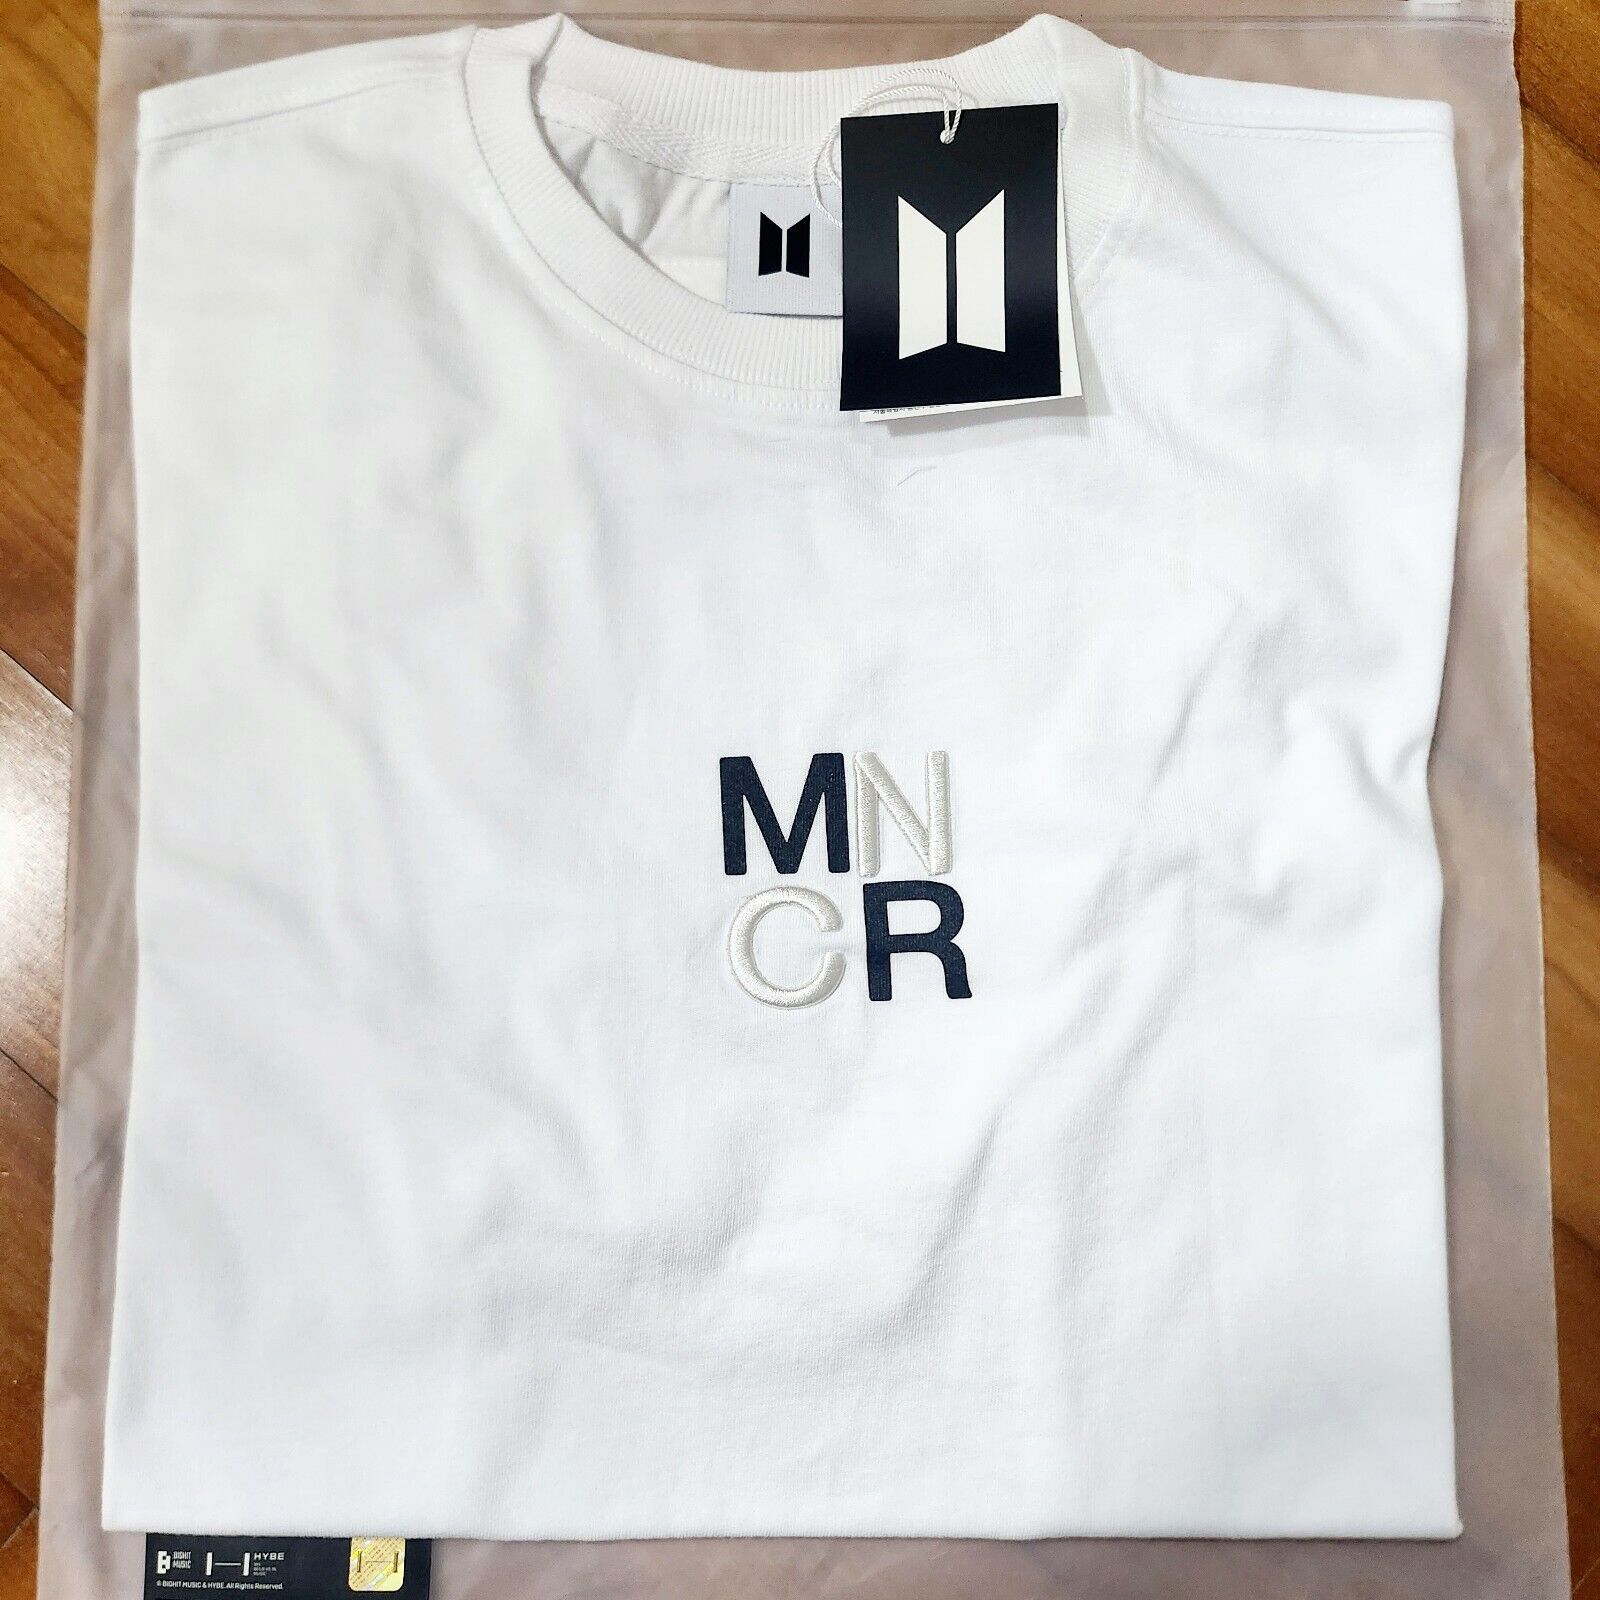 BTS Monochrome T-shirt (White)